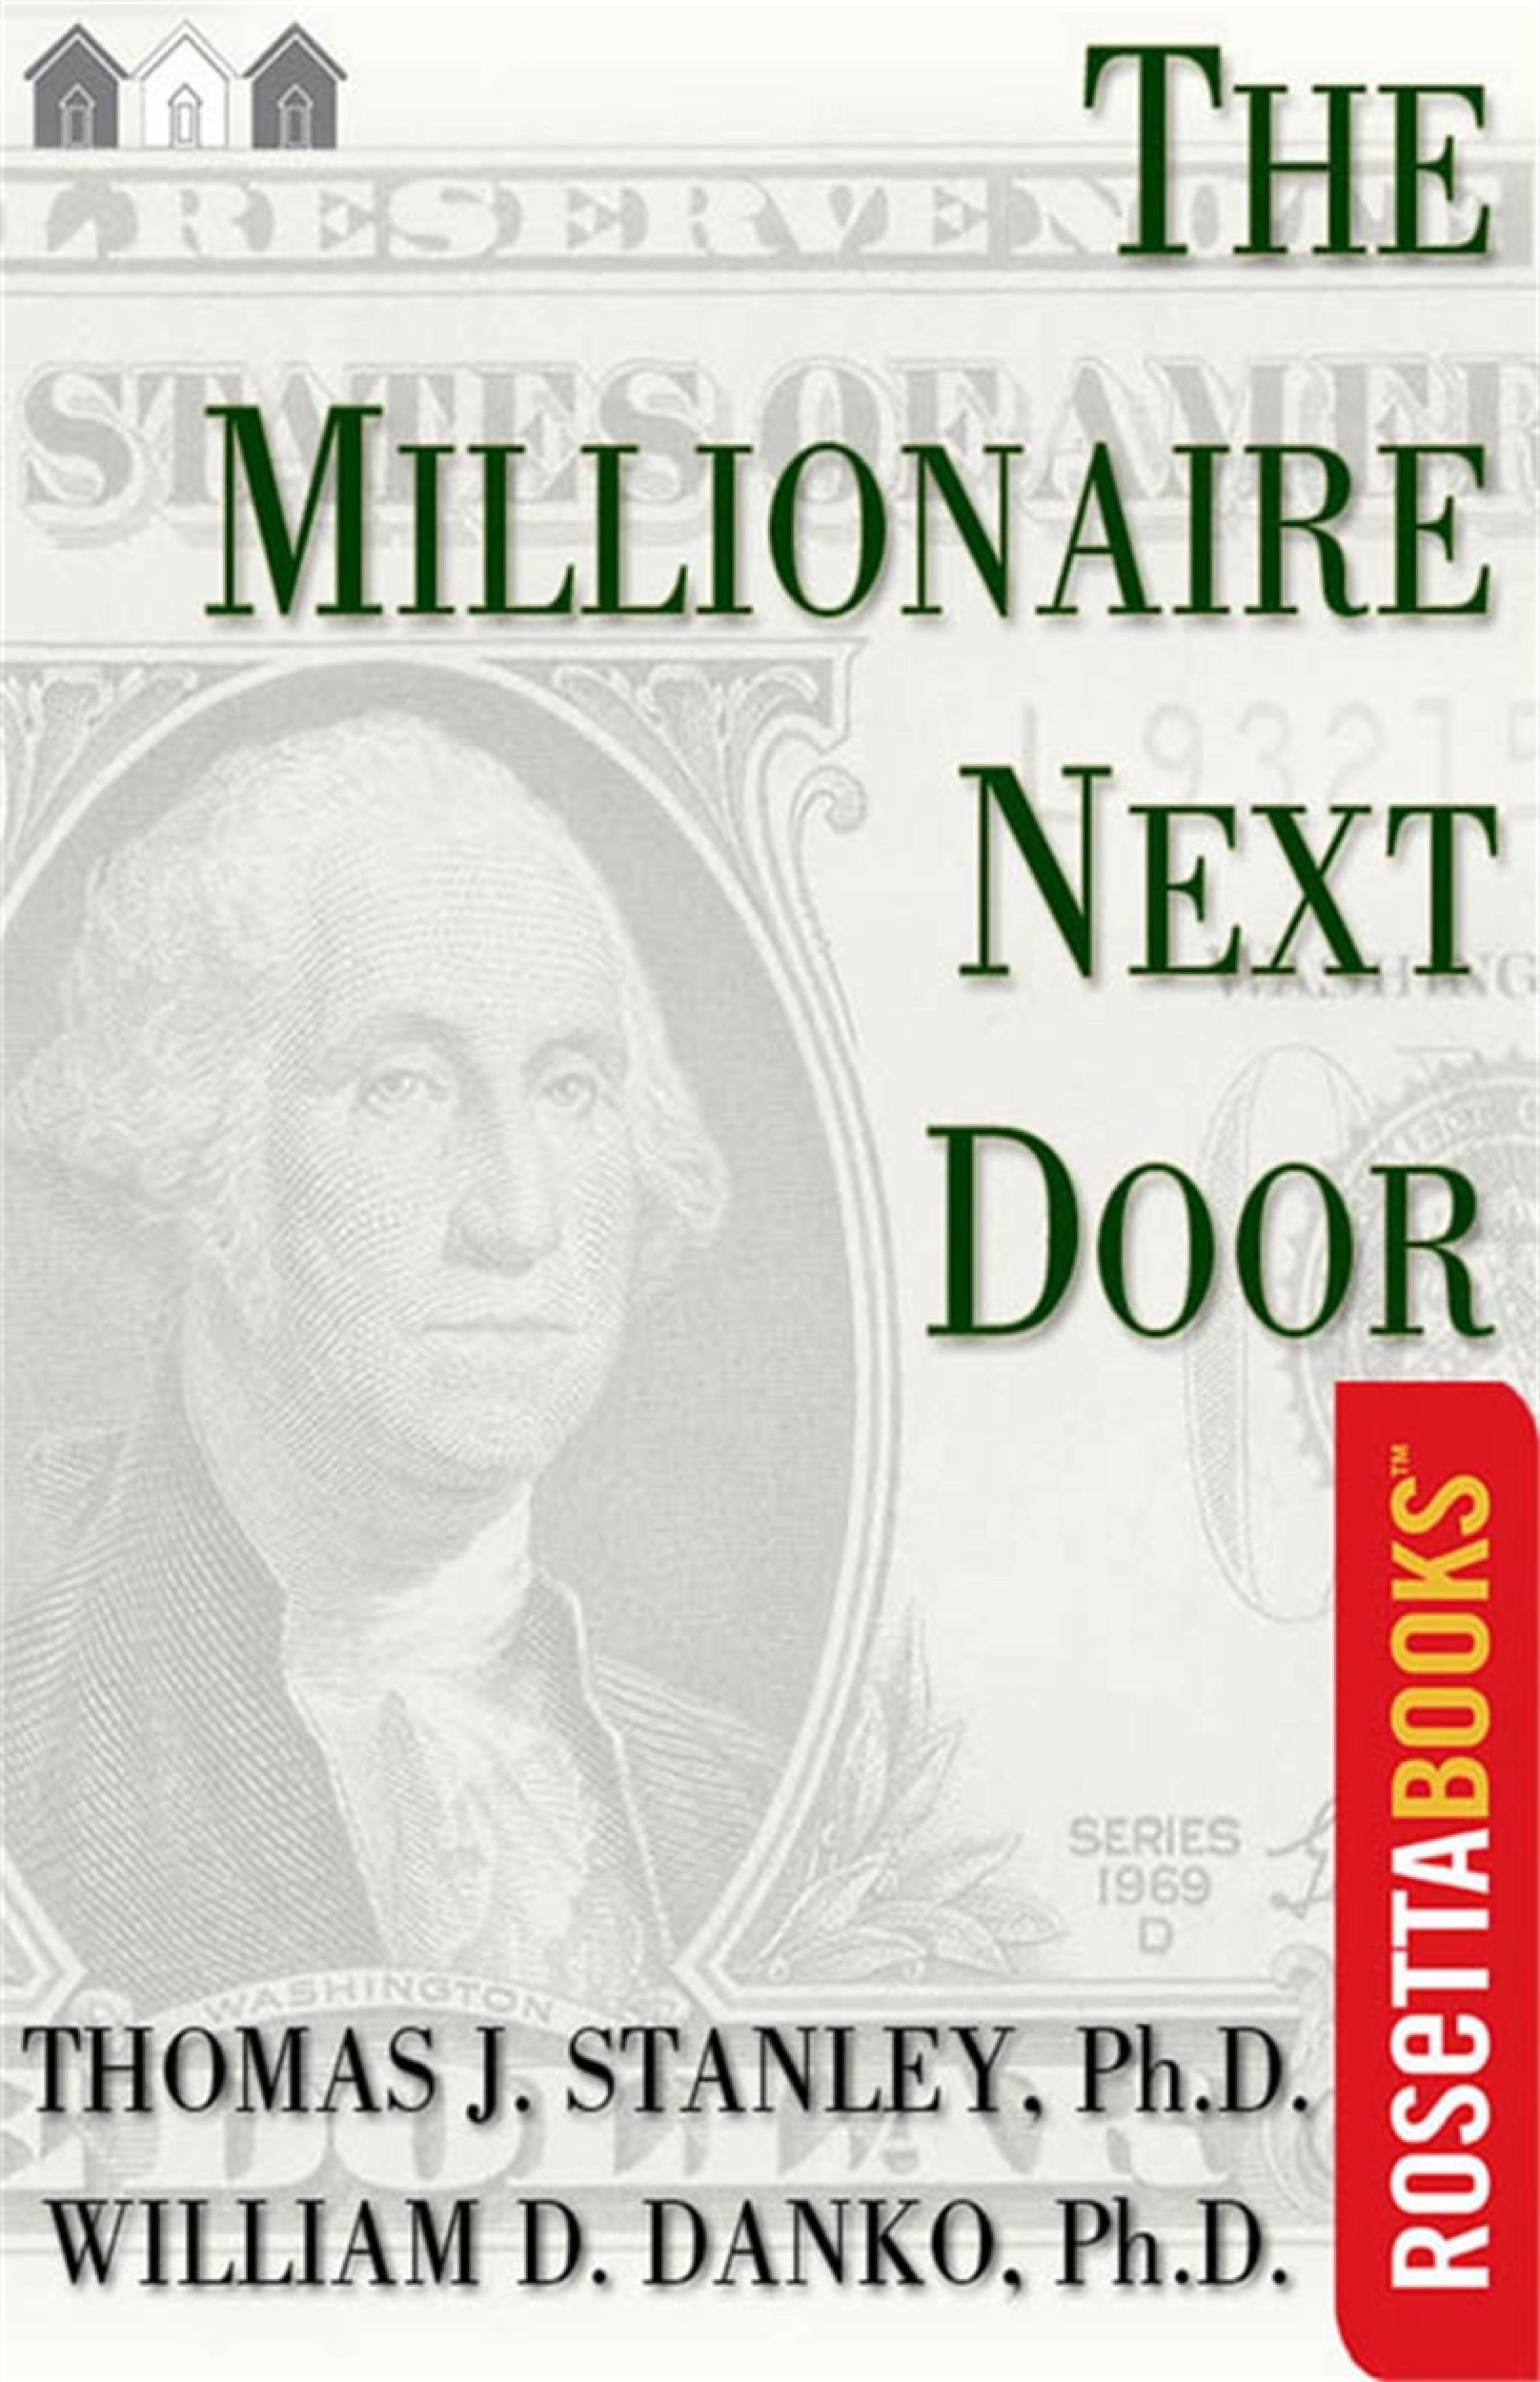 the millionaire next door audiobook mp3 free